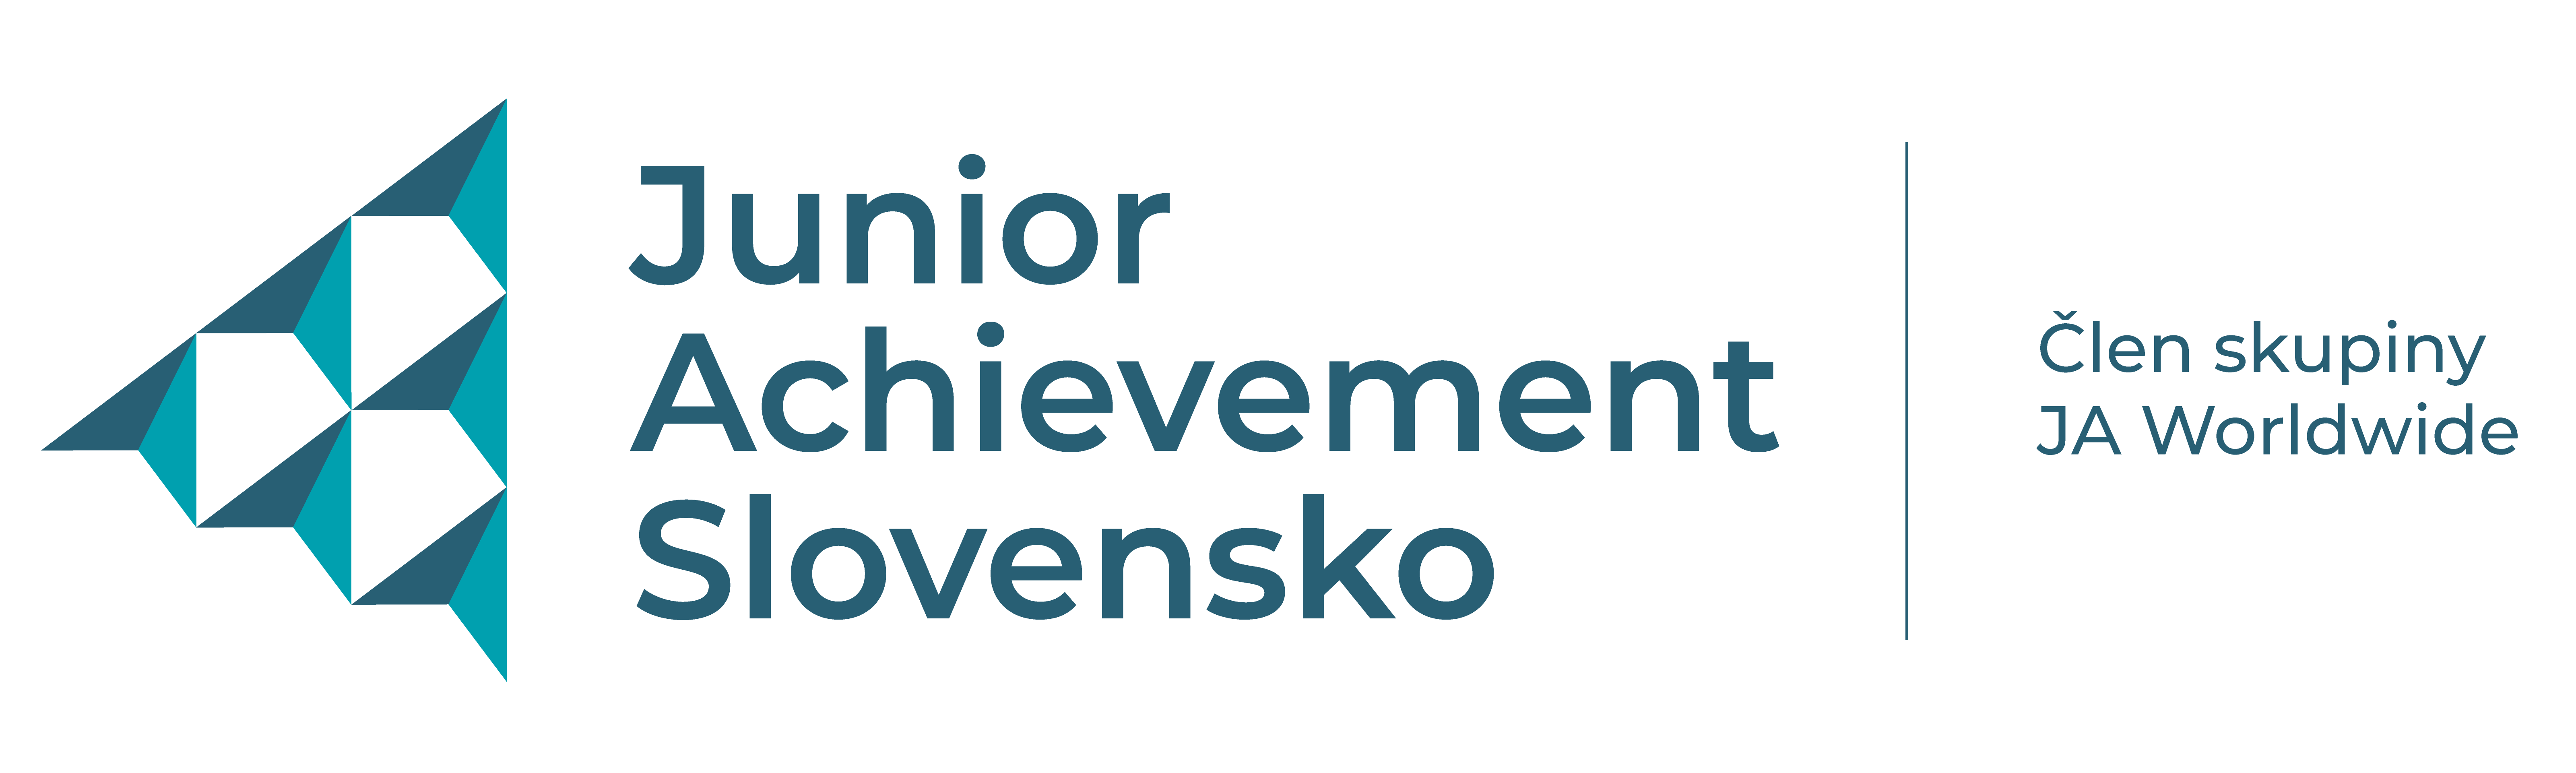 Junior Achievement Slovensko baner